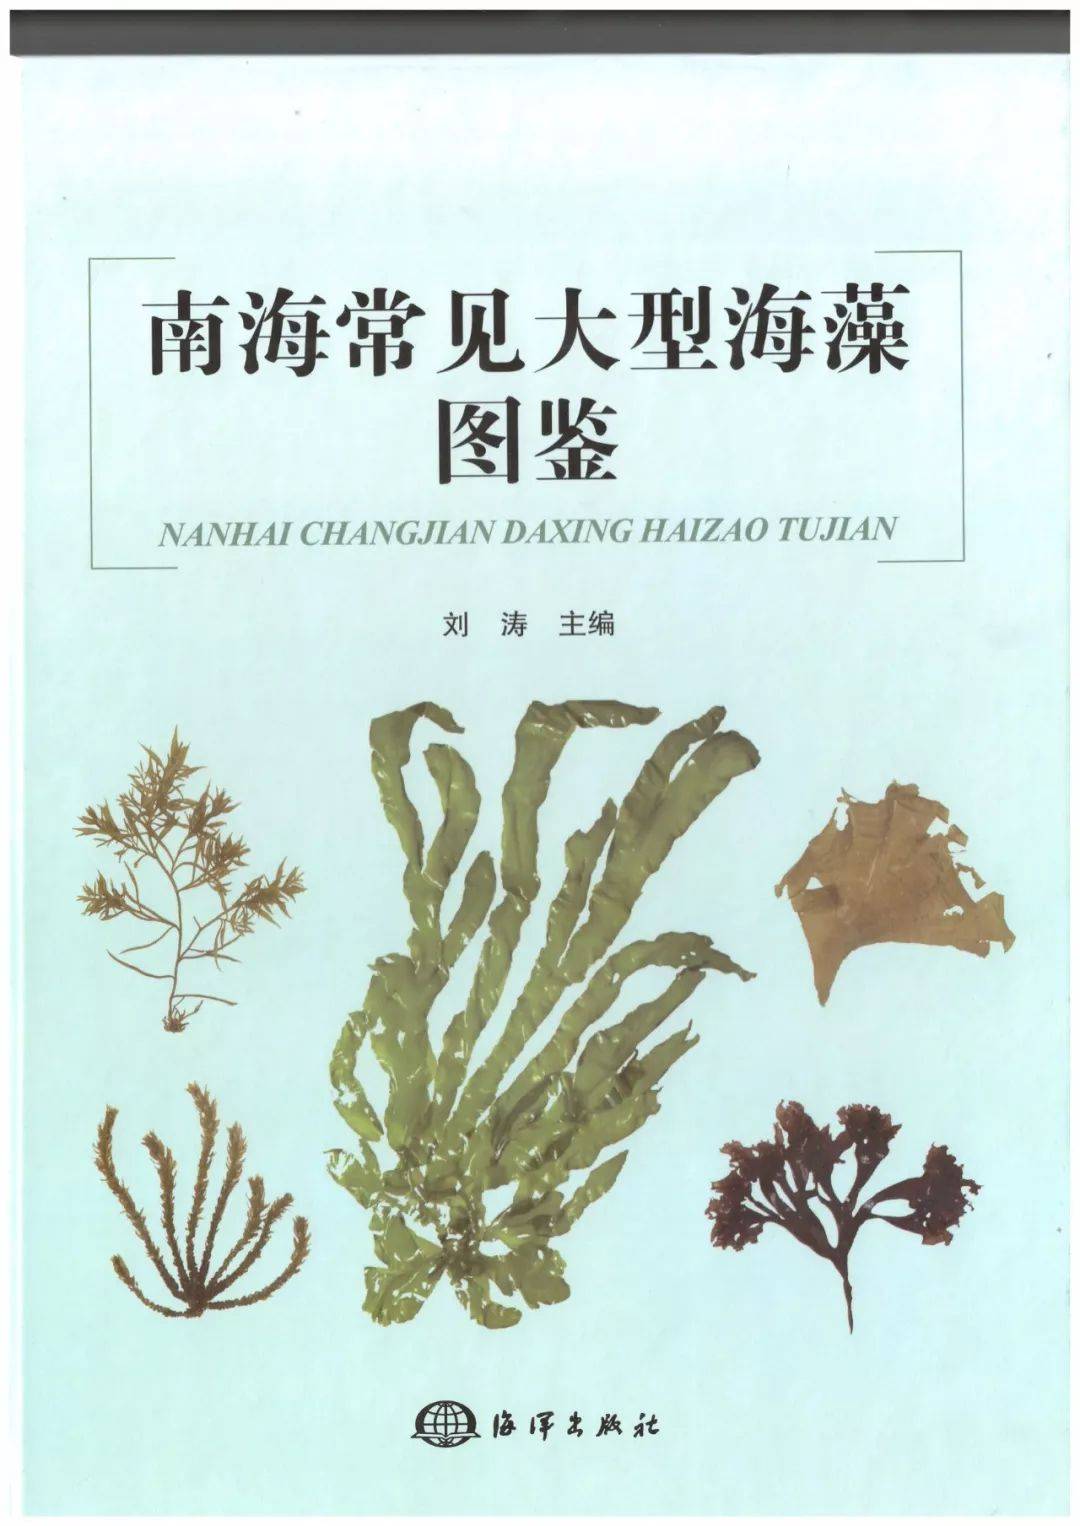 金鱼藻图片_植物根茎的金鱼藻图片大全 - 花卉网